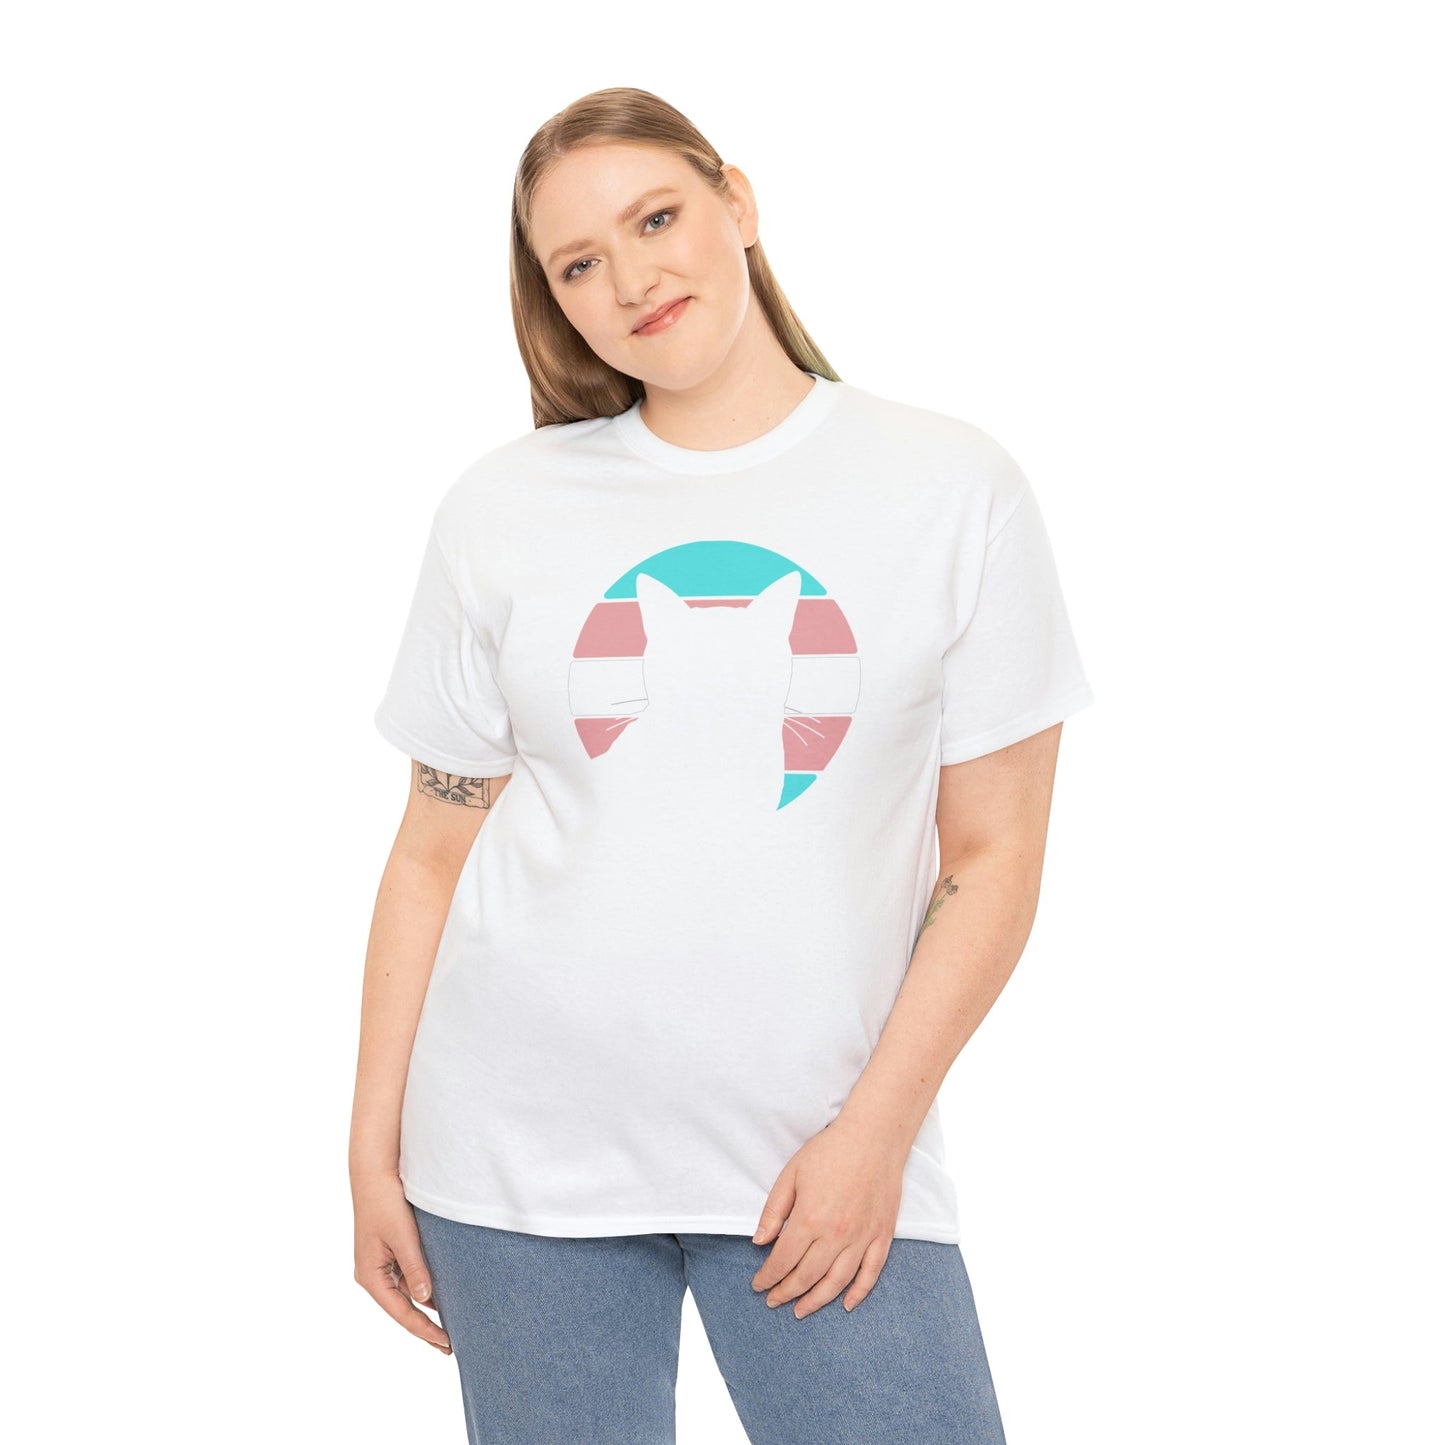 Trans Pride | Cat Silhouette | T-shirt - Detezi Designs-32590708290487187473